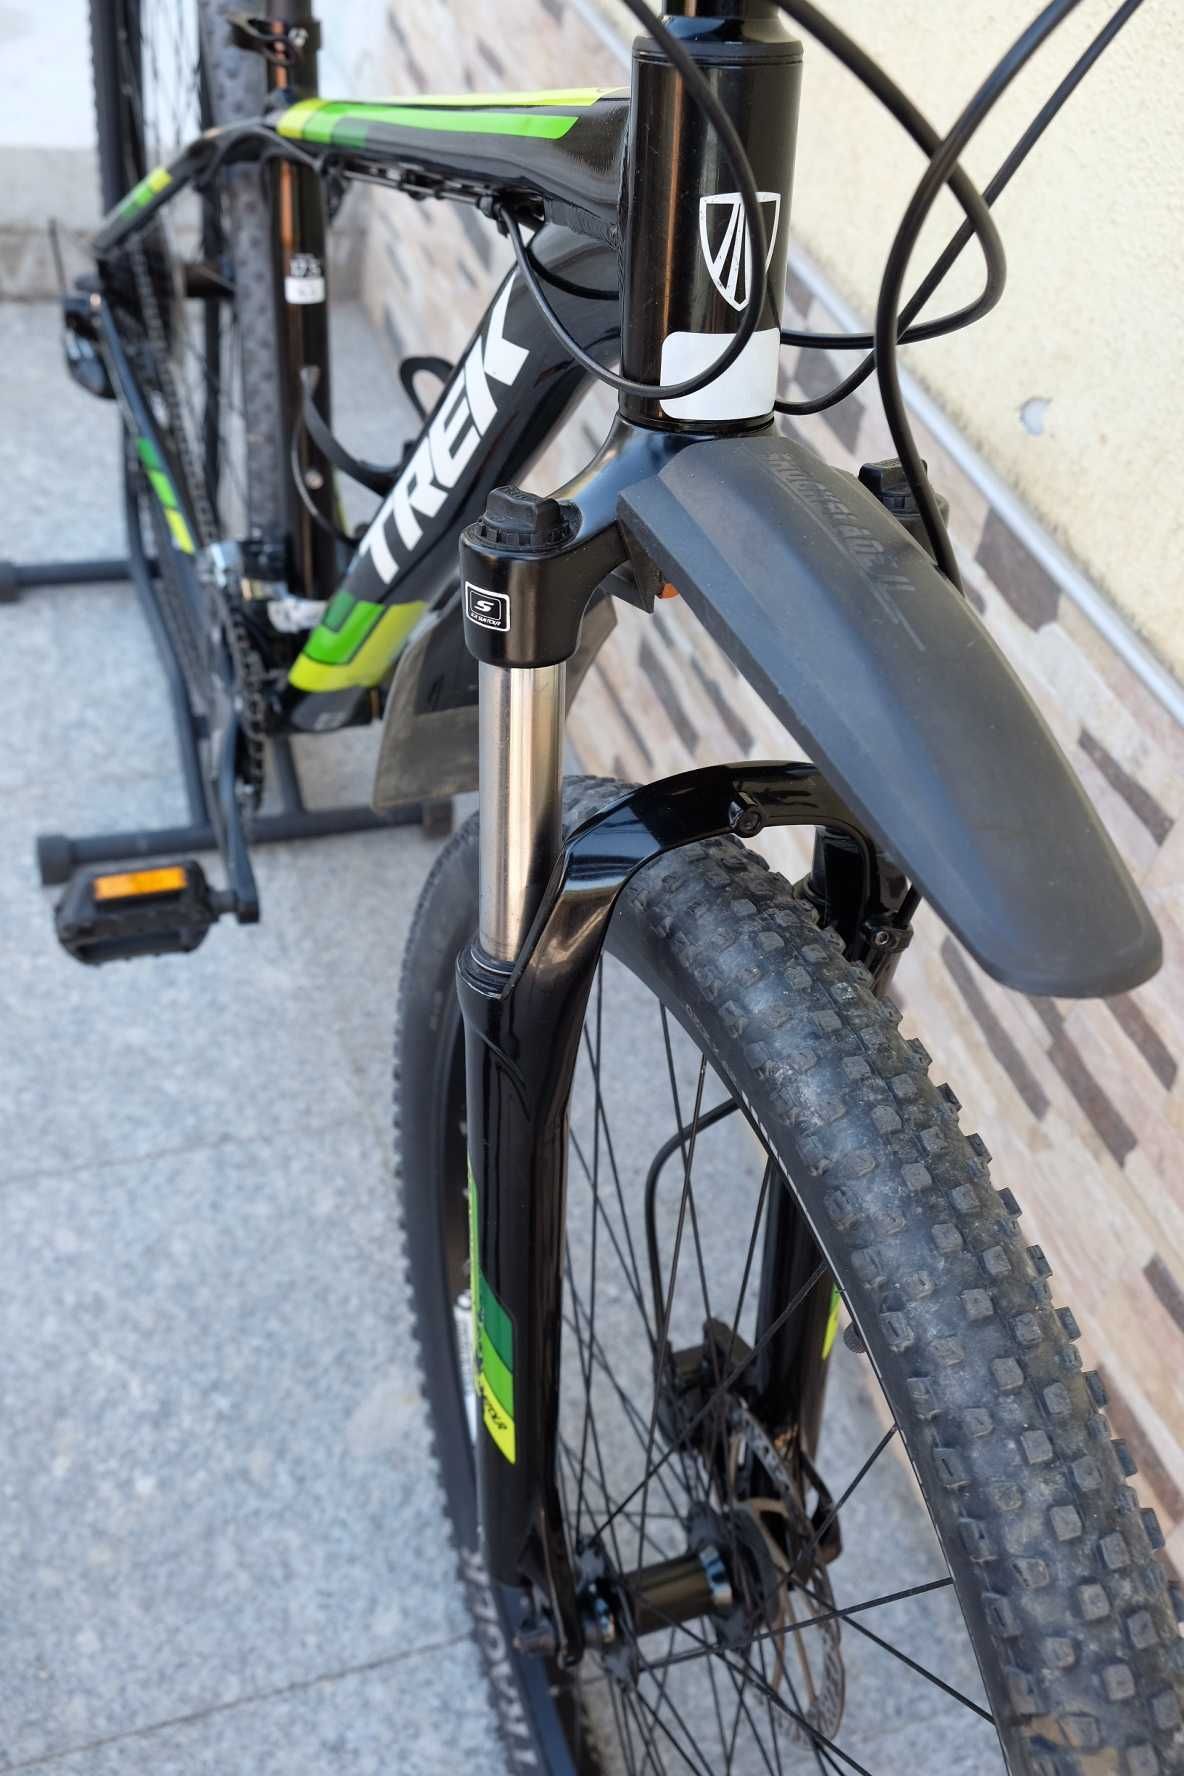 Планински алуминиев велосипед 29" TREK, скорости Shimano DEORE  ТОП